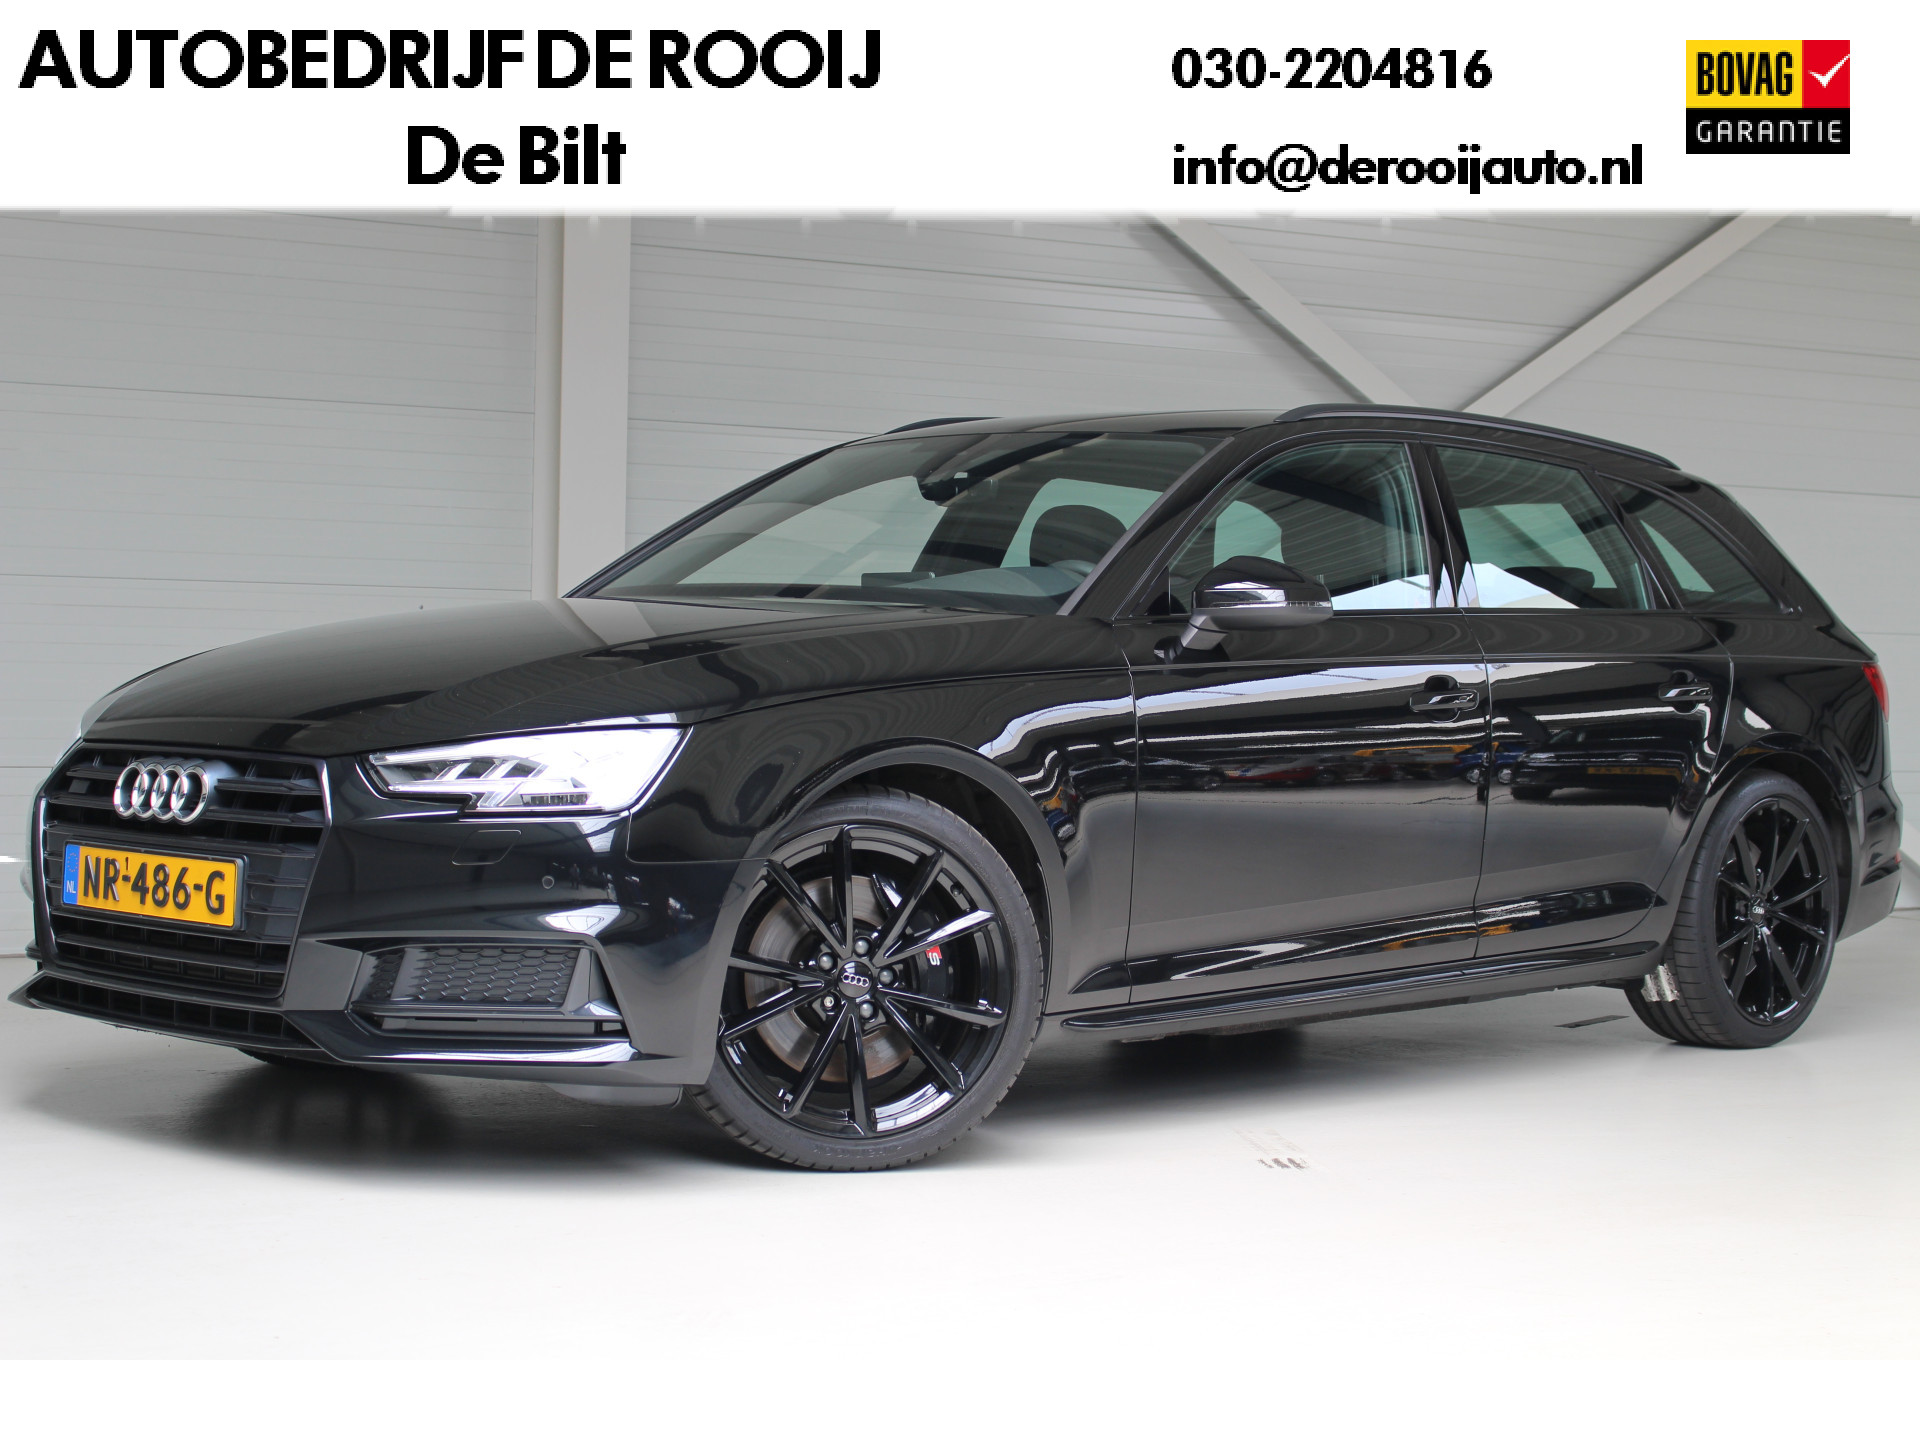 Audi S4 Avant 3.0 TFSI Quattro 354 PK | Eerste eigenaars auto | dealeronderhouden | Side assist | PDC | Leder . bij viaBOVAG.nl